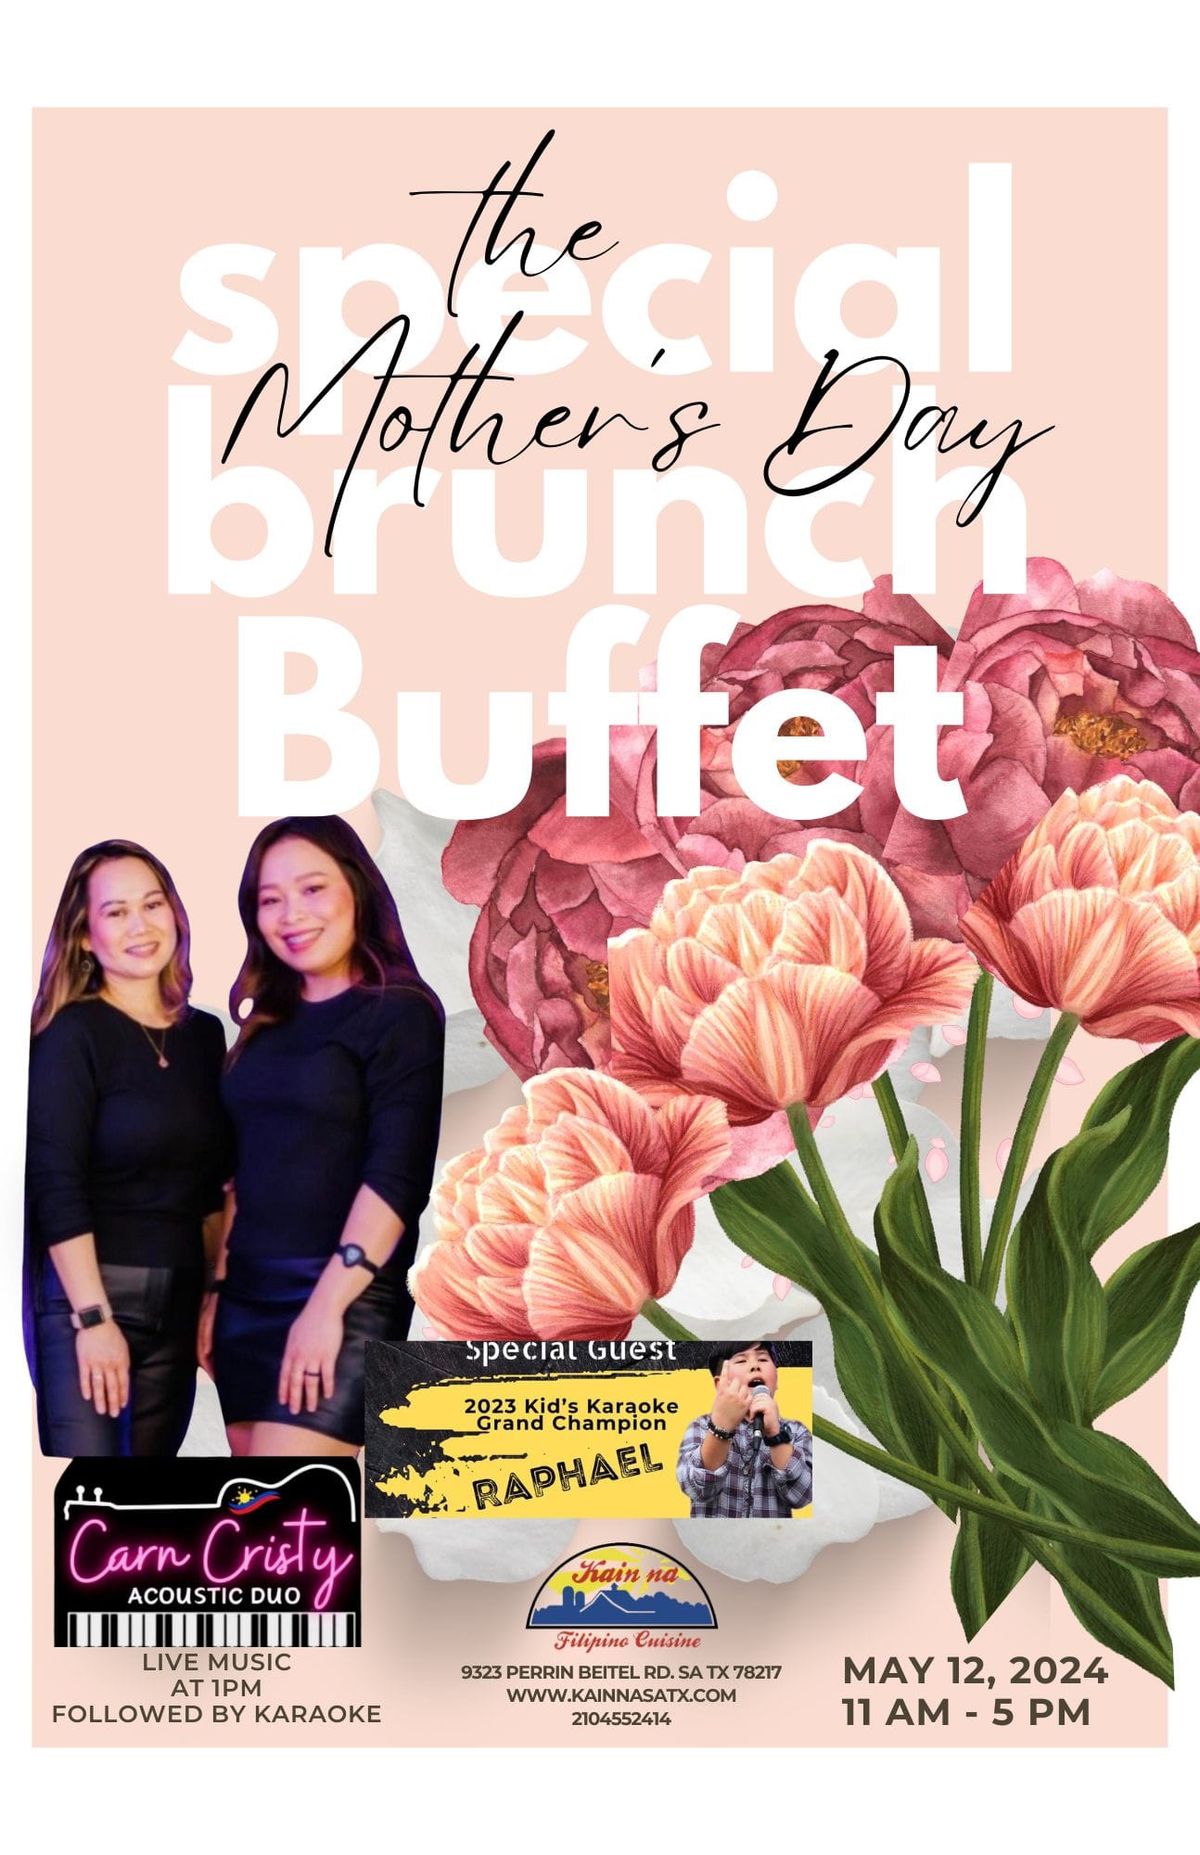 Mother's Day Brunch Buffet